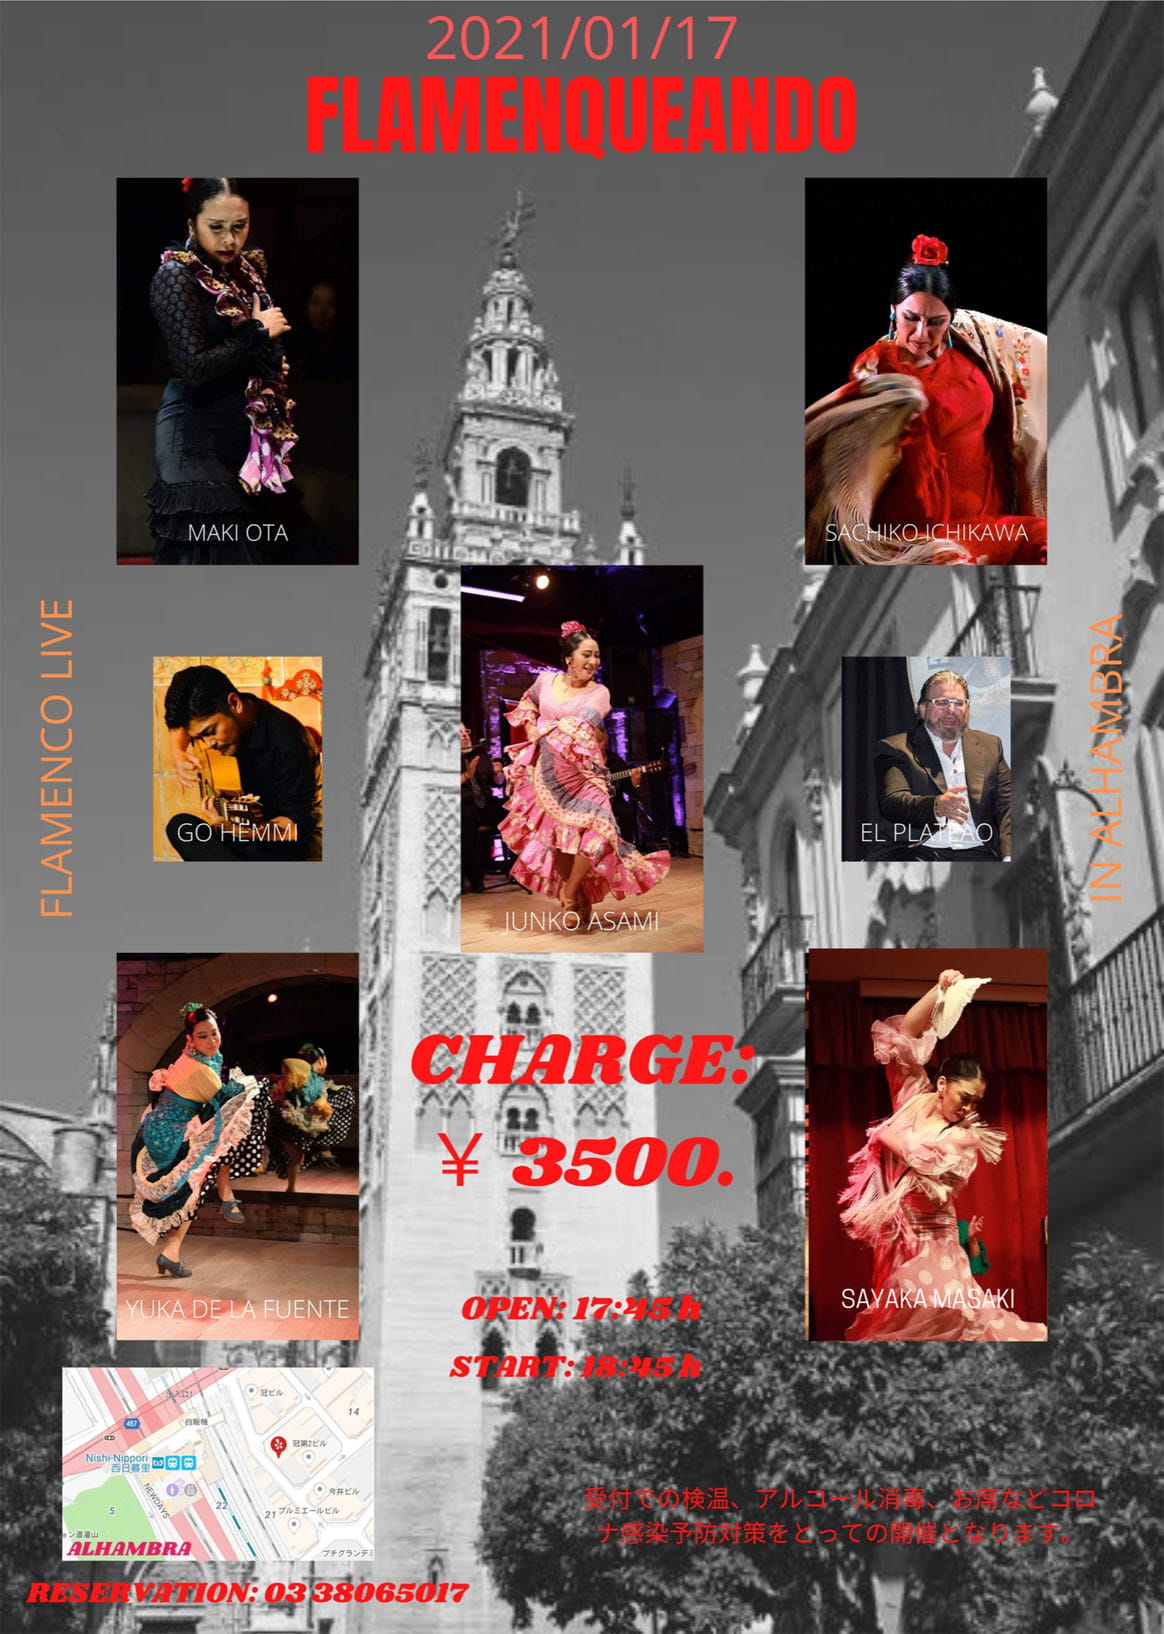 Flamenco LIVE FLAMENQUEANDO